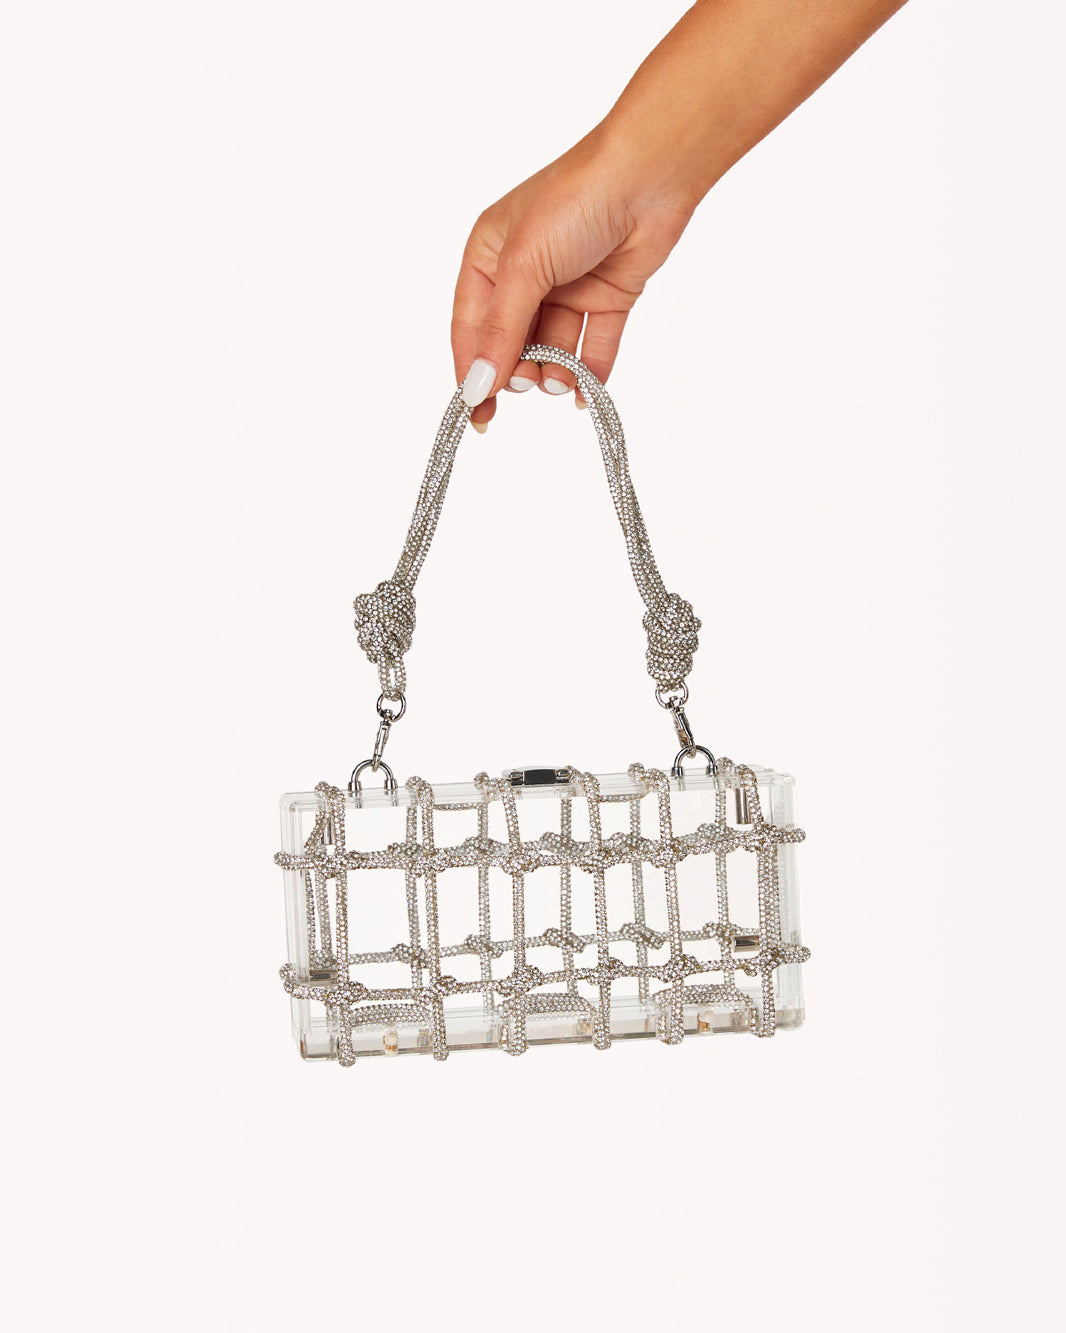 Silver Diamanté Chain Box Clutch Bag